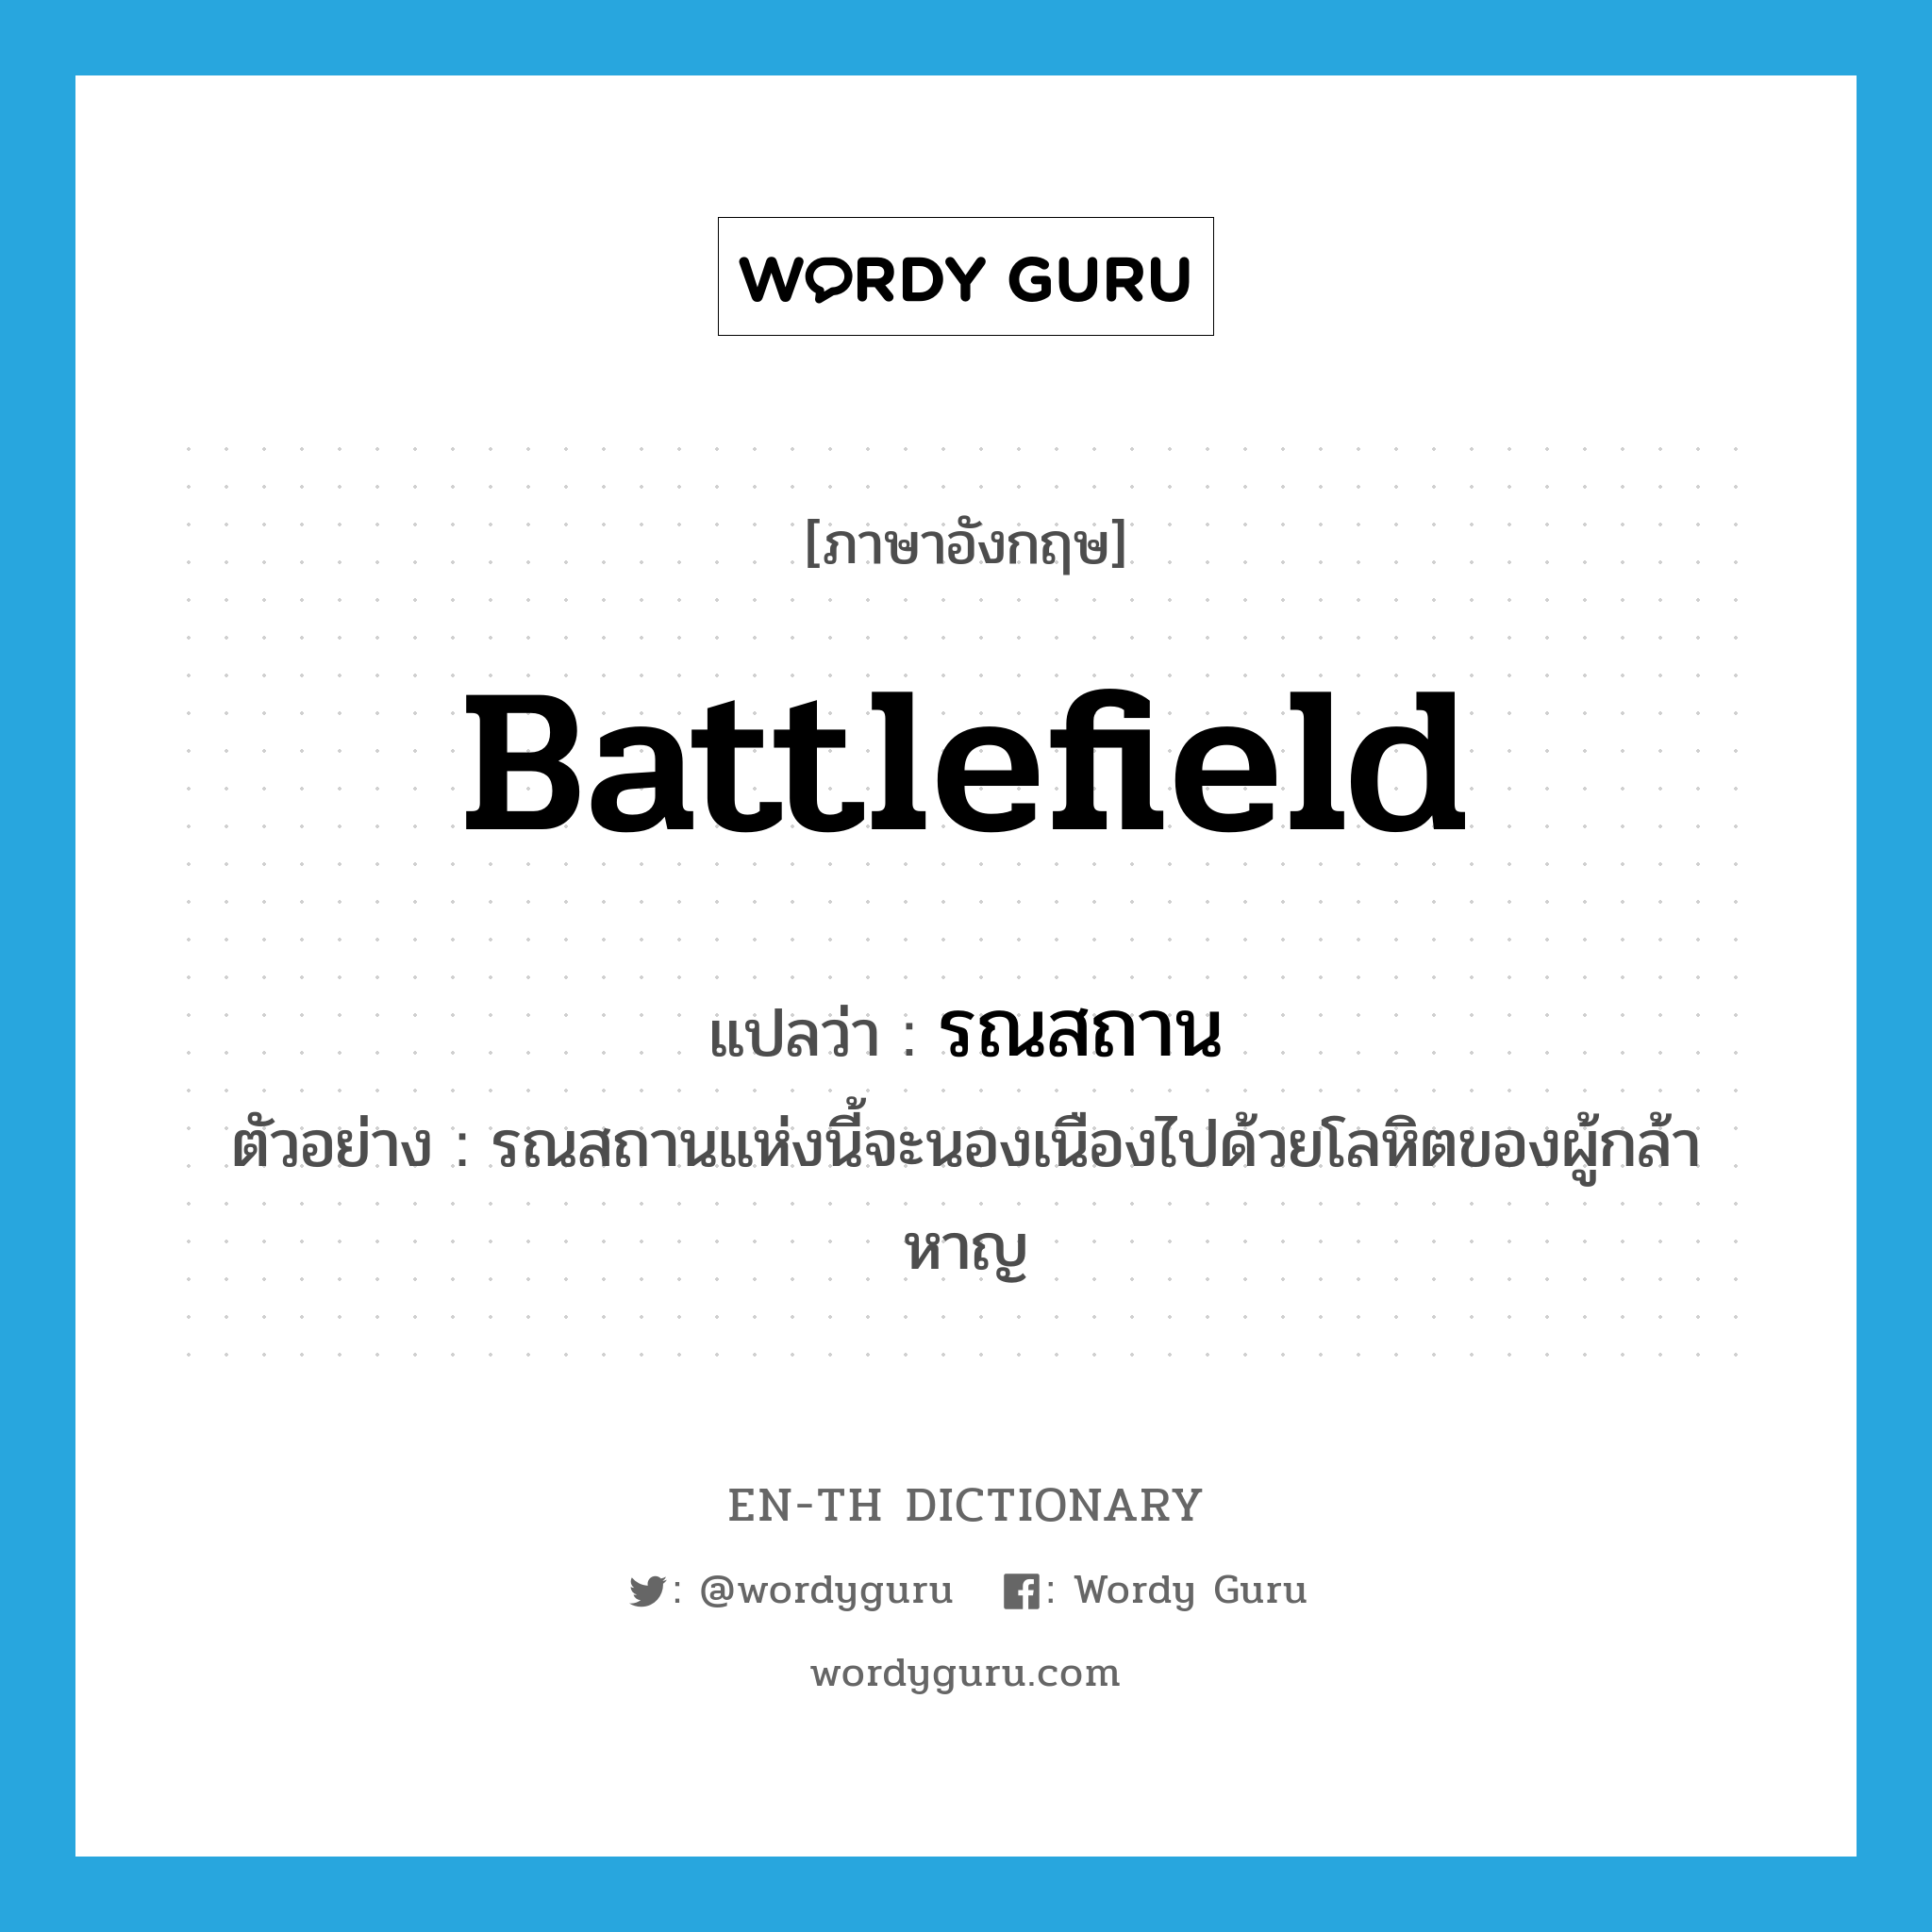 battlefield แปลว่า?, คำศัพท์ภาษาอังกฤษ battlefield แปลว่า รณสถาน ประเภท N ตัวอย่าง รณสถานแห่งนี้จะนองเนืองไปด้วยโลหิตของผู้กล้าหาญ หมวด N